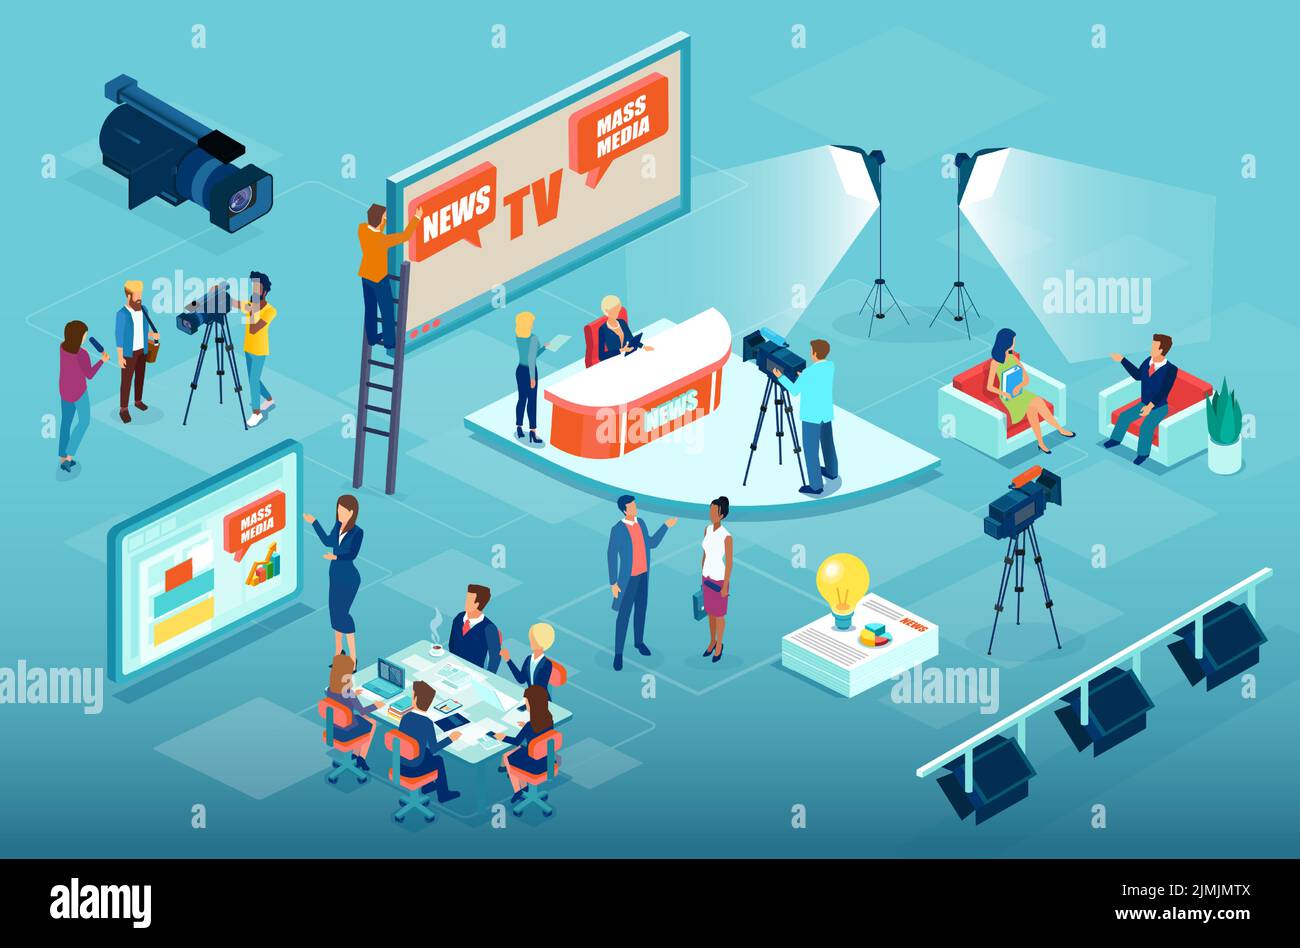 Produktionsprozess und Business Management der Massenmedien mit Journalisten, die Nachrichtenmaterial vorbereiten, Betreibern und Interviewern sowie Geschäftsführern di Stock Vektor